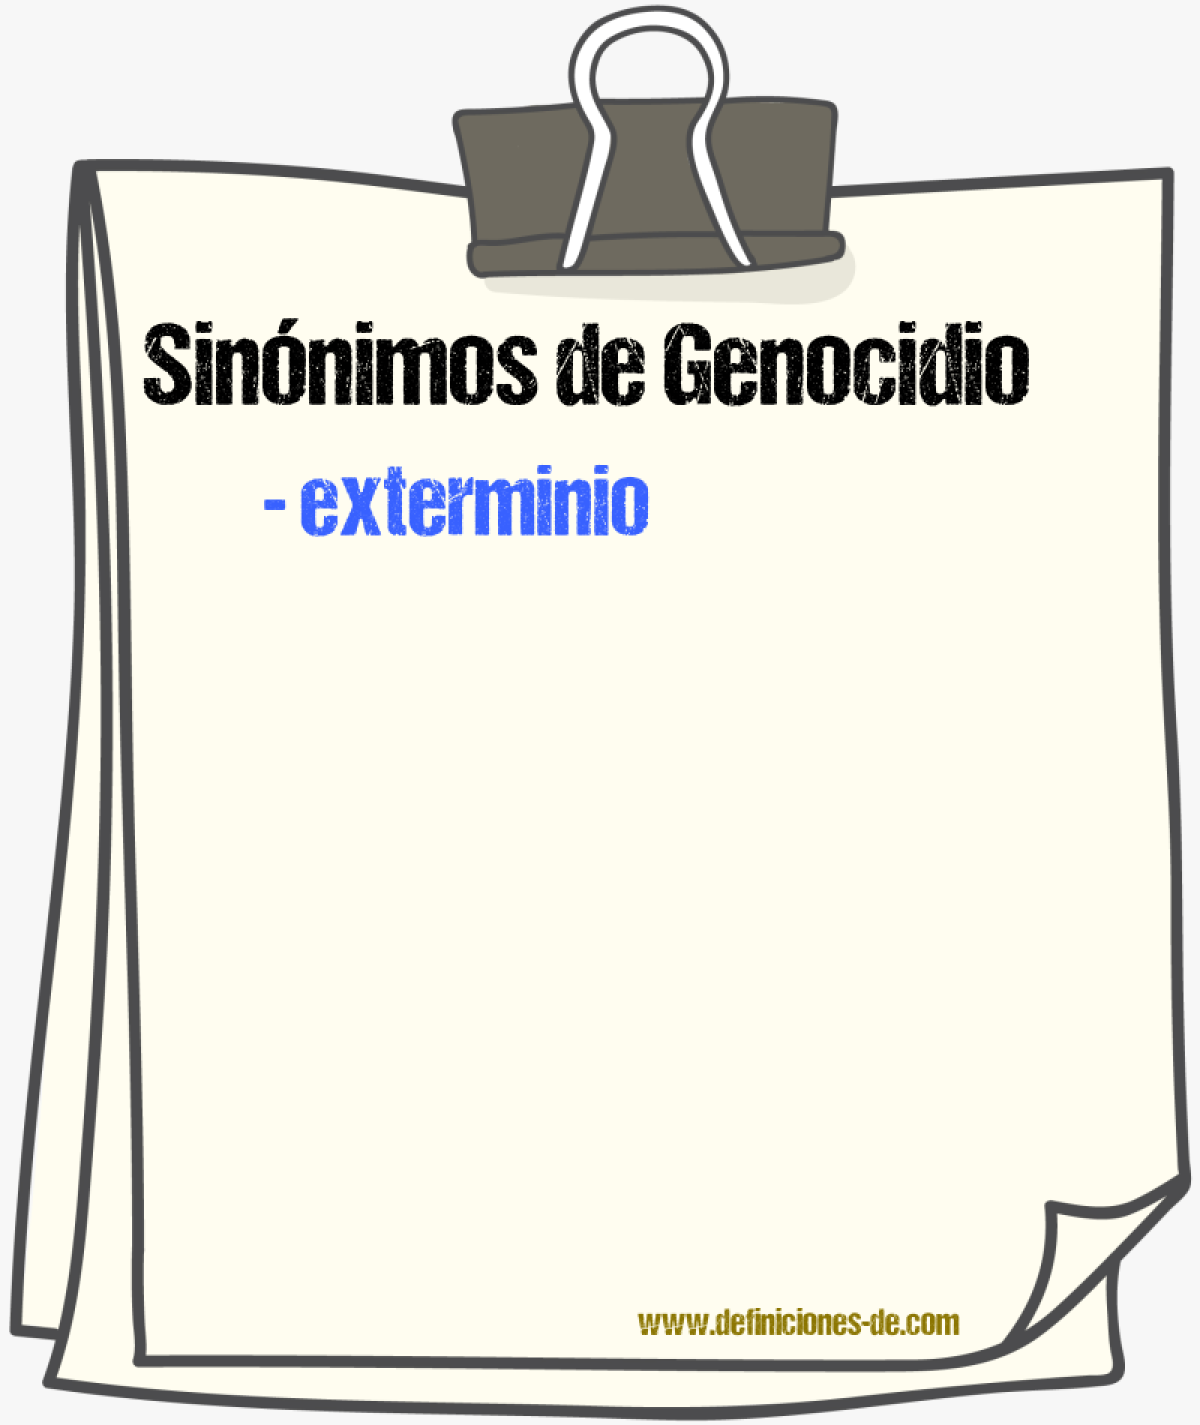 Sinónimos de genocidio